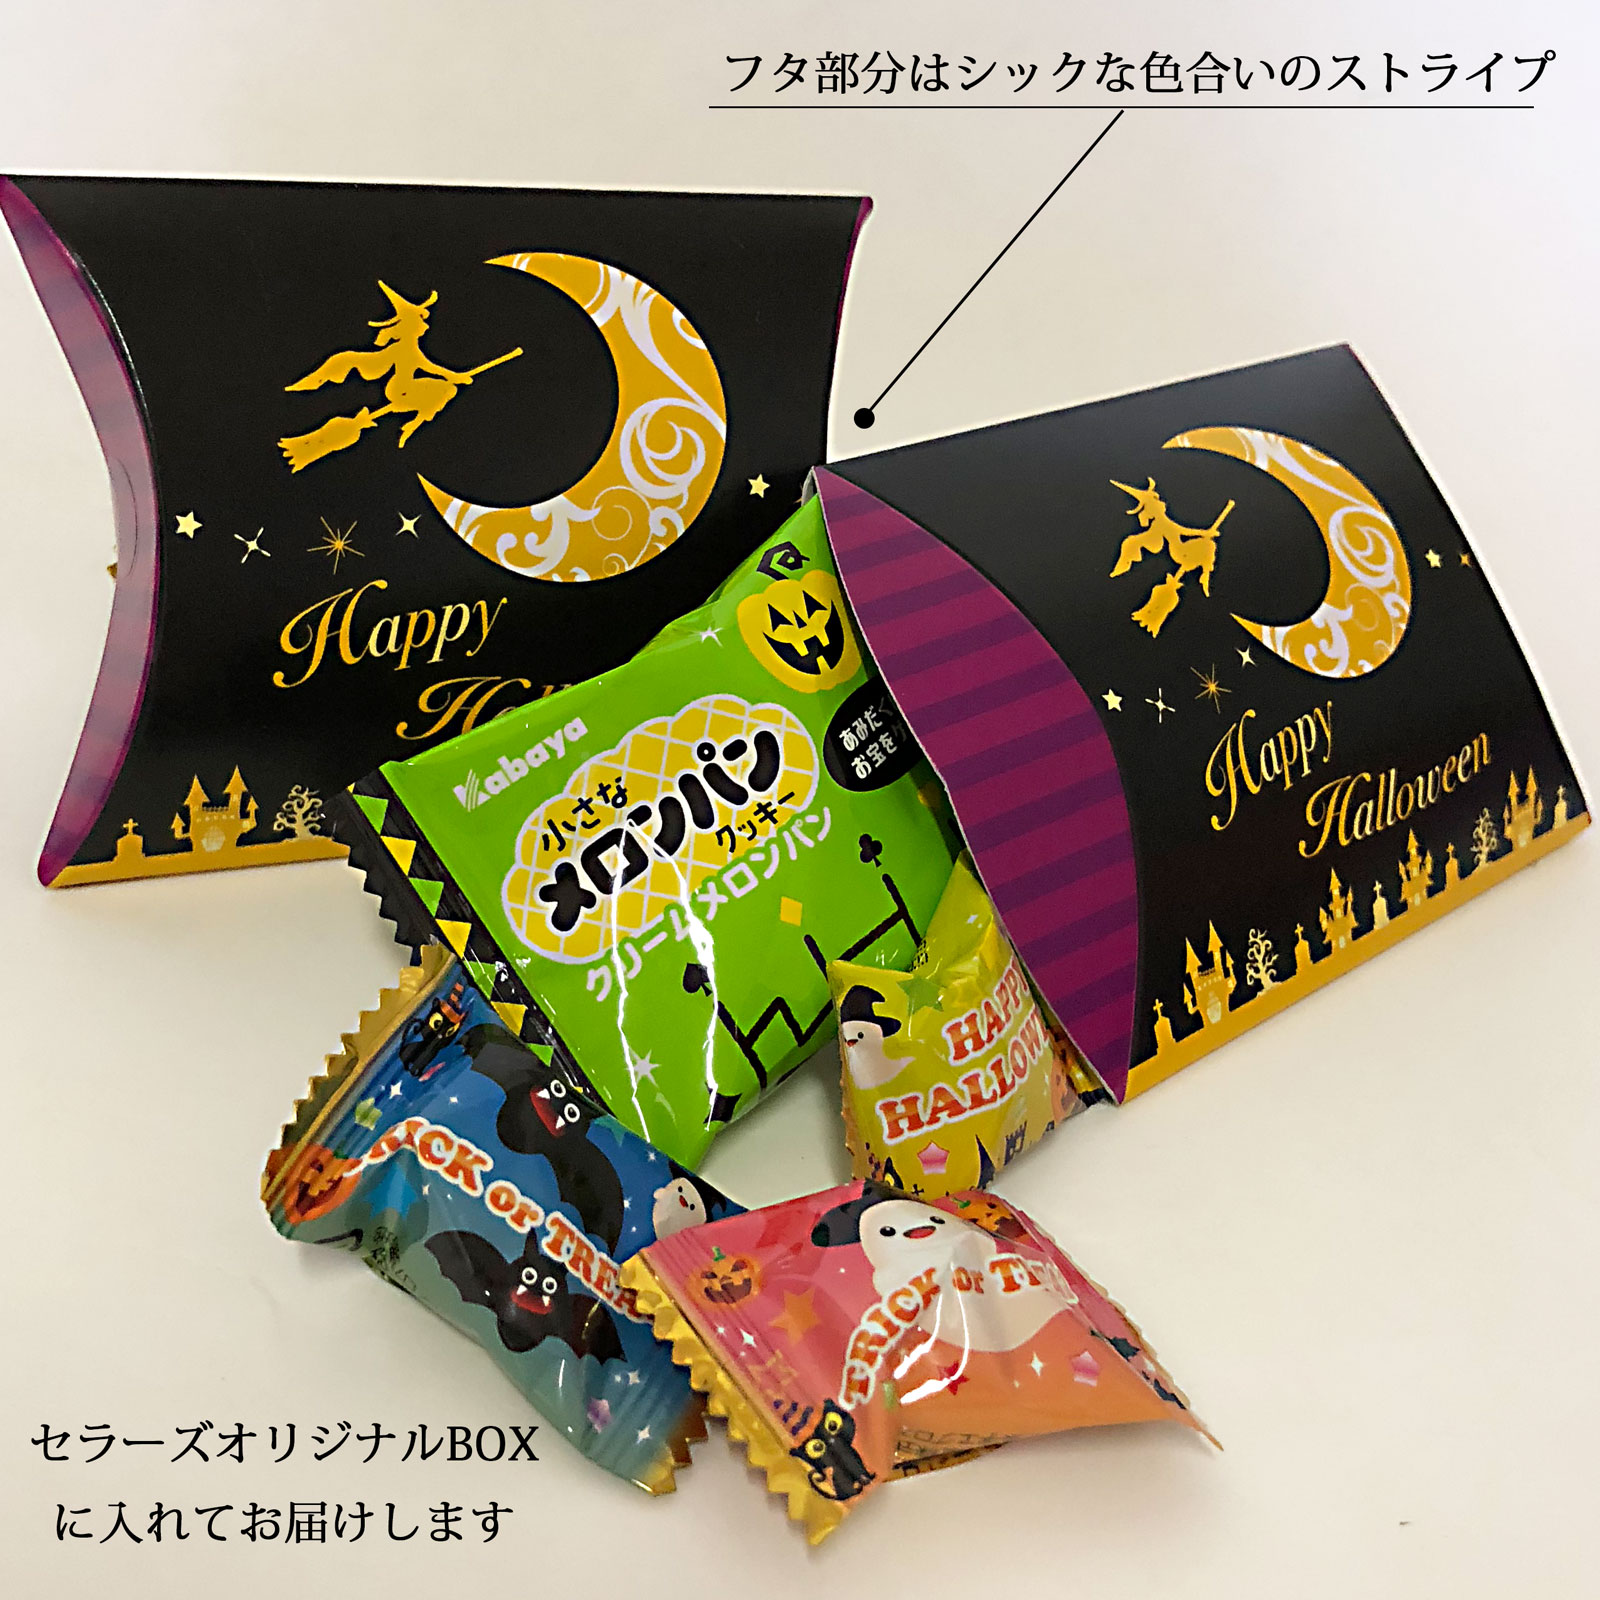 ハロウィンBOX（S）|季節商品（期間限定）(ハロウィン商品)|お菓子の詰め合わせの通販ならセラーズのオンラインショップ